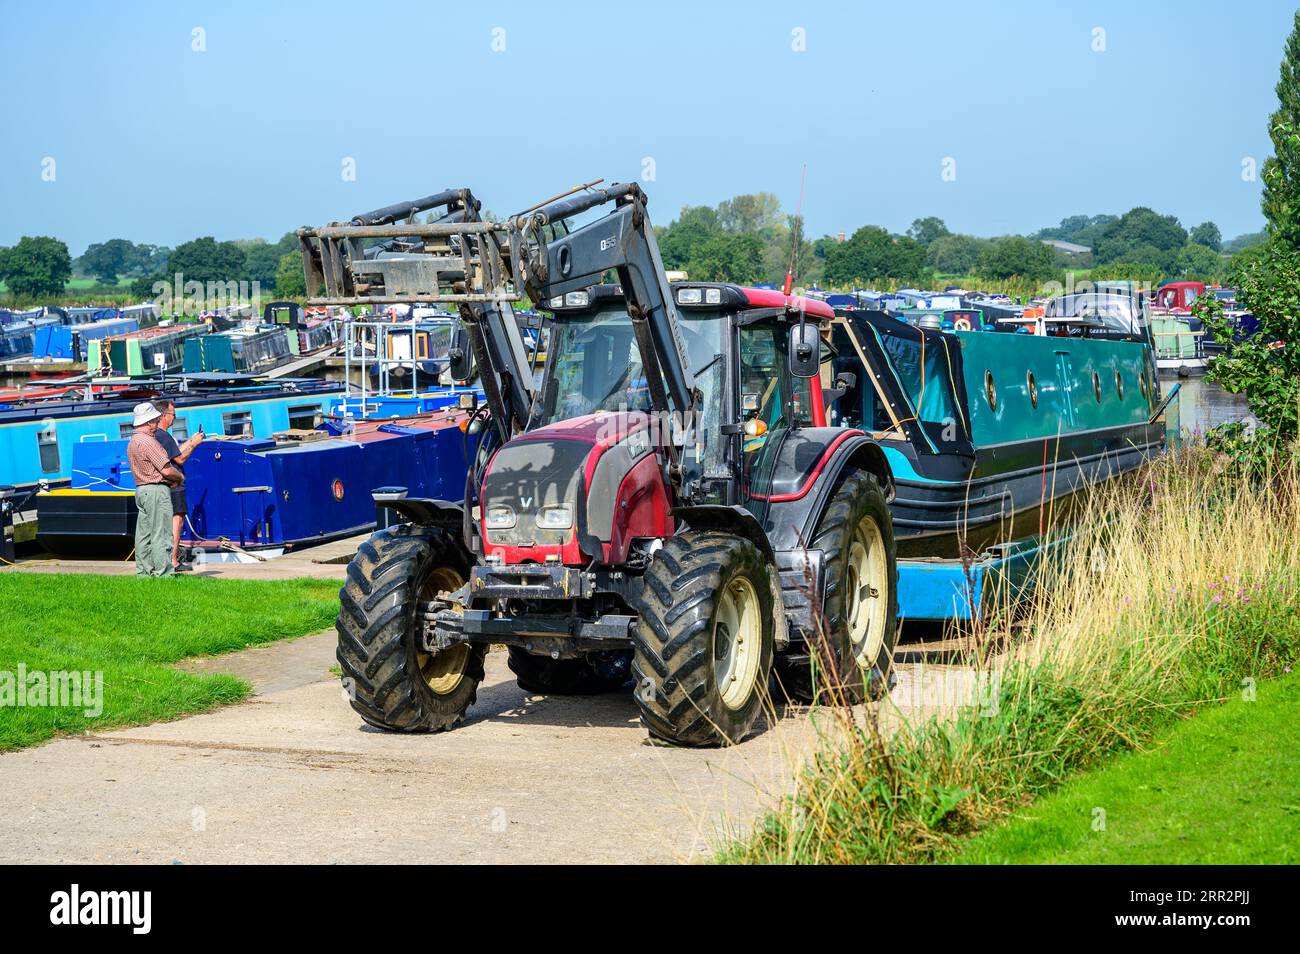 Ein Traktor und ein spezieller Anhänger werden verwendet, um ein Schmalboot über eine Hangbahn in einem Jachthafen aus dem Kanal zu ziehen. Stockfoto